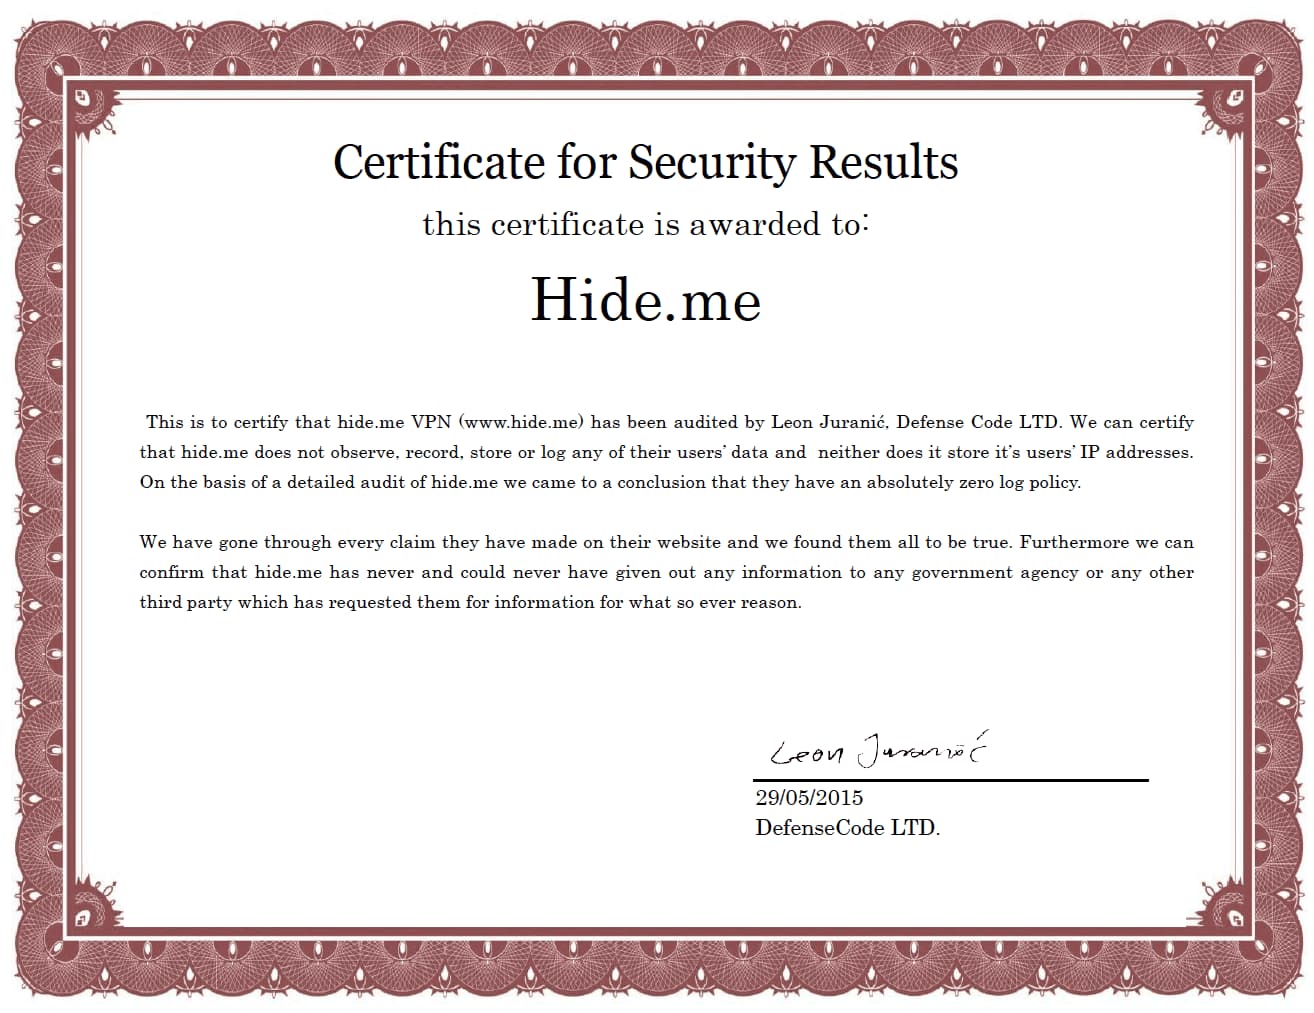  Certificado de auditoria da Hide.me concedido pela DefenseCode Ltd